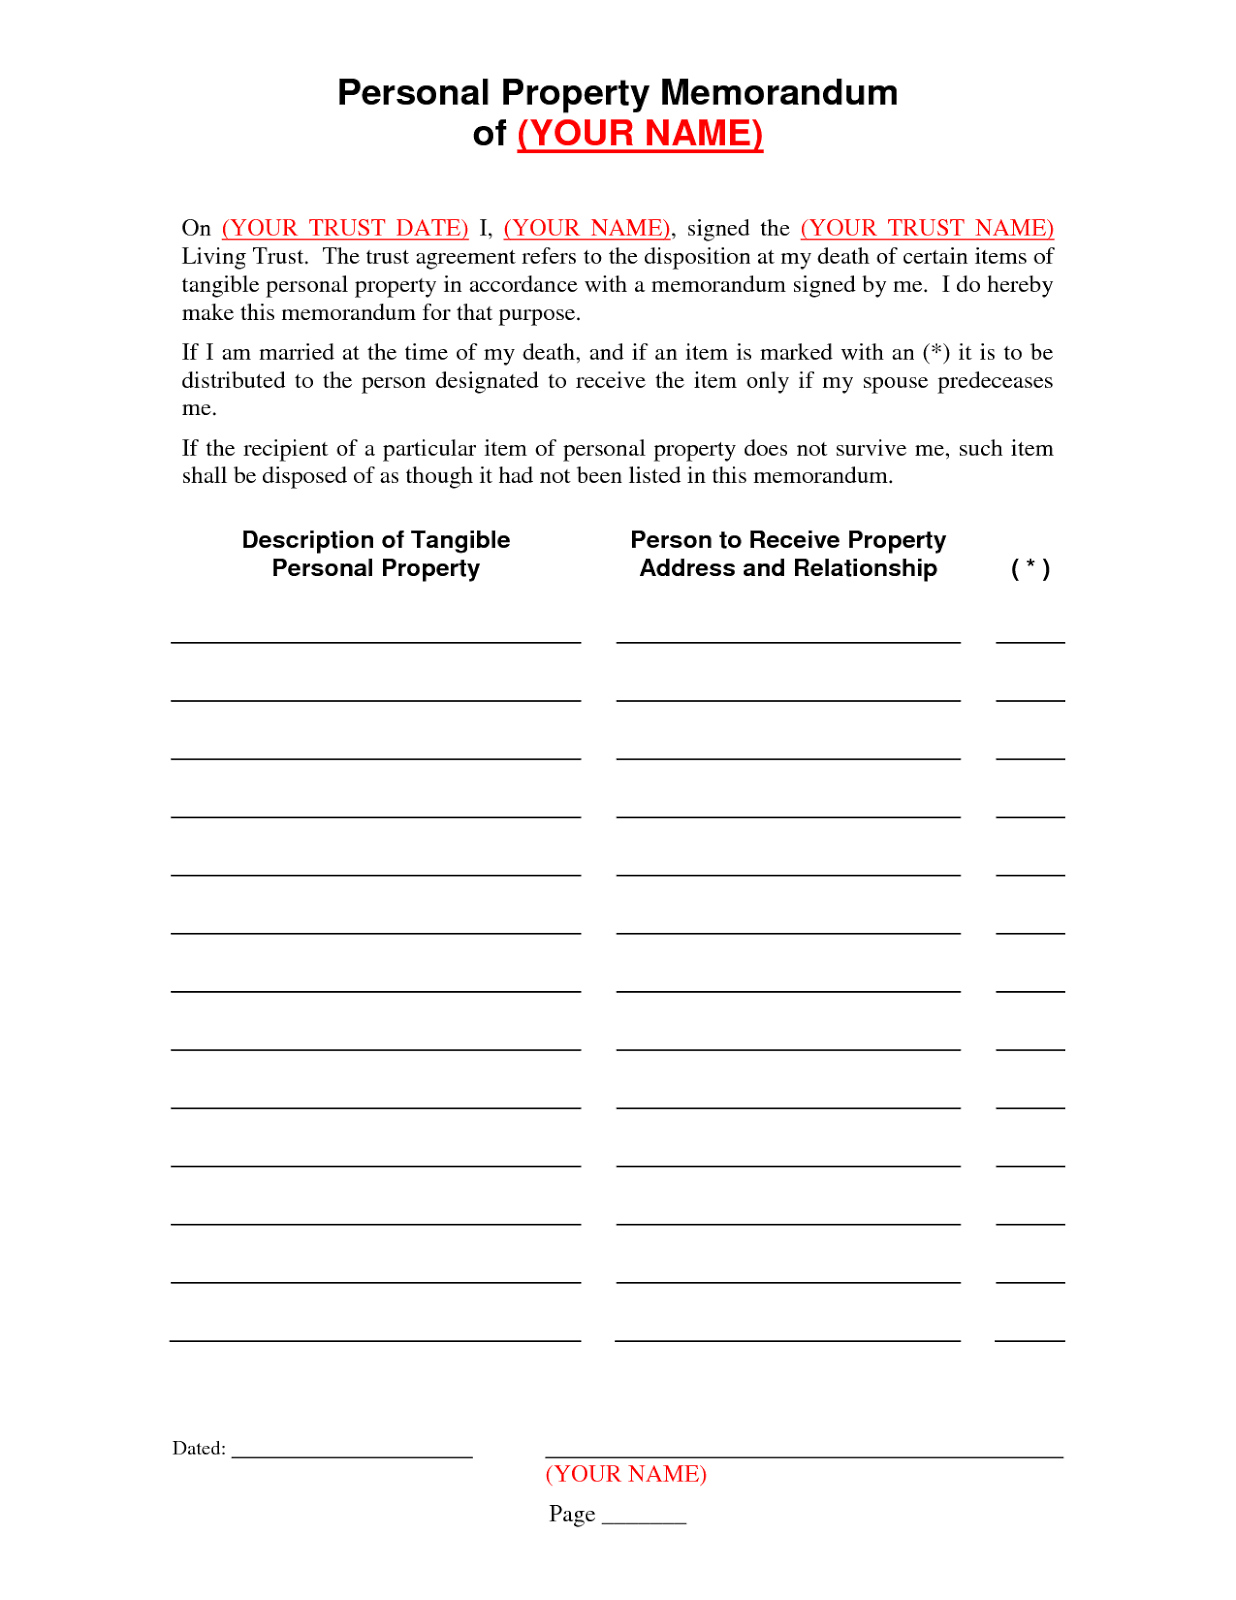 printable-personal-property-memorandum-template-printable-templates